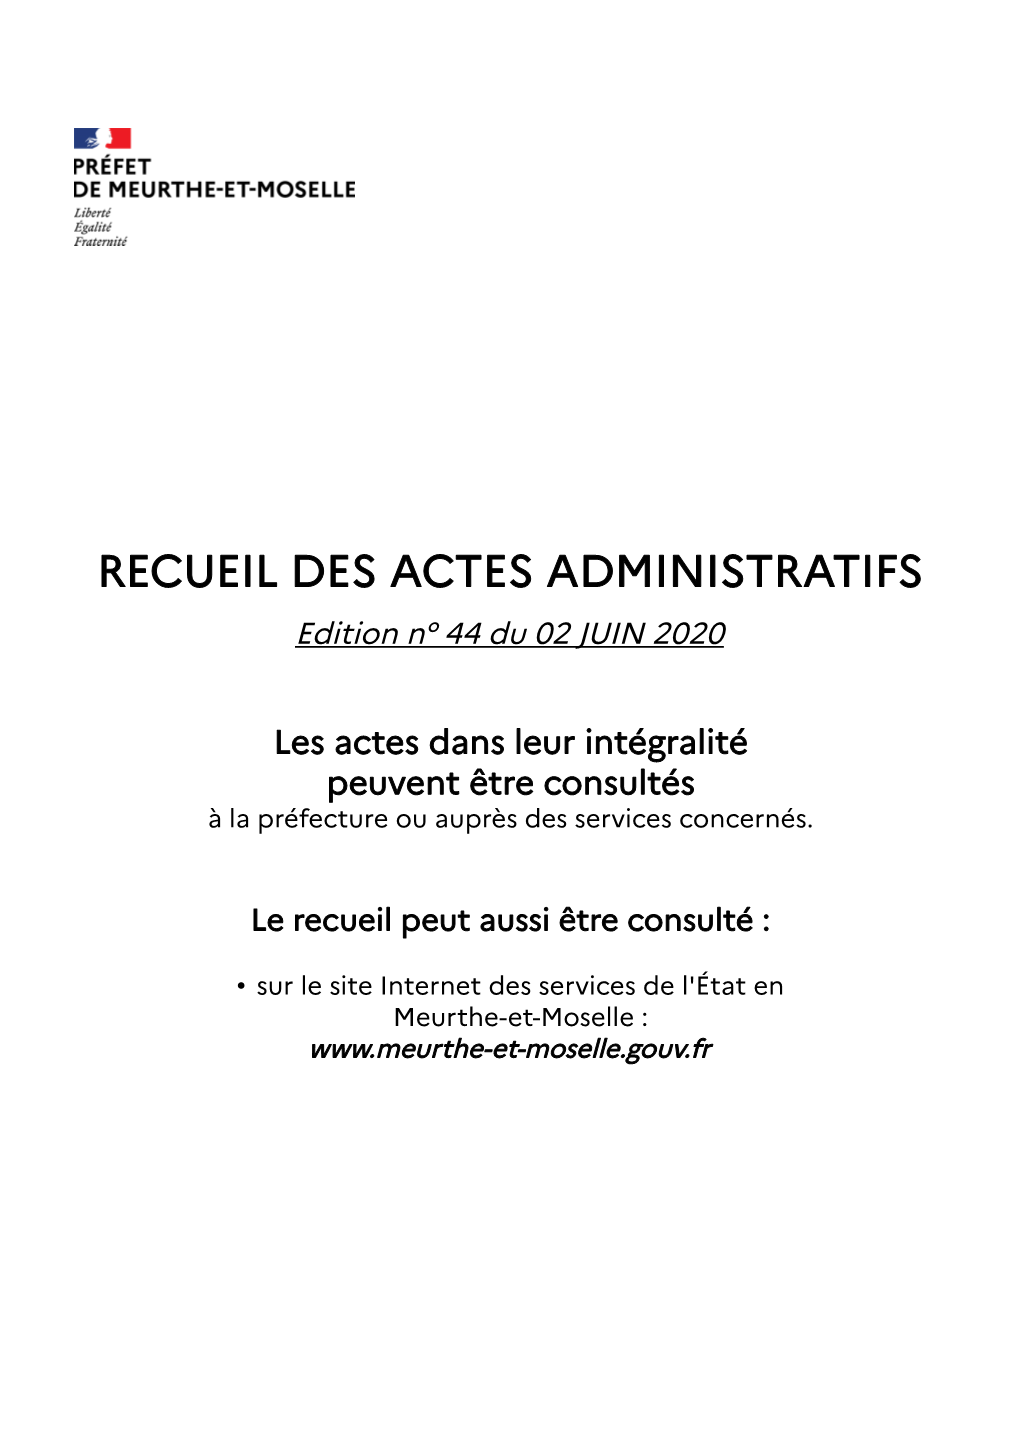 RECUEIL DES ACTES ADMINISTRATIFS Edition N° 44 Du 02 JUIN 2020